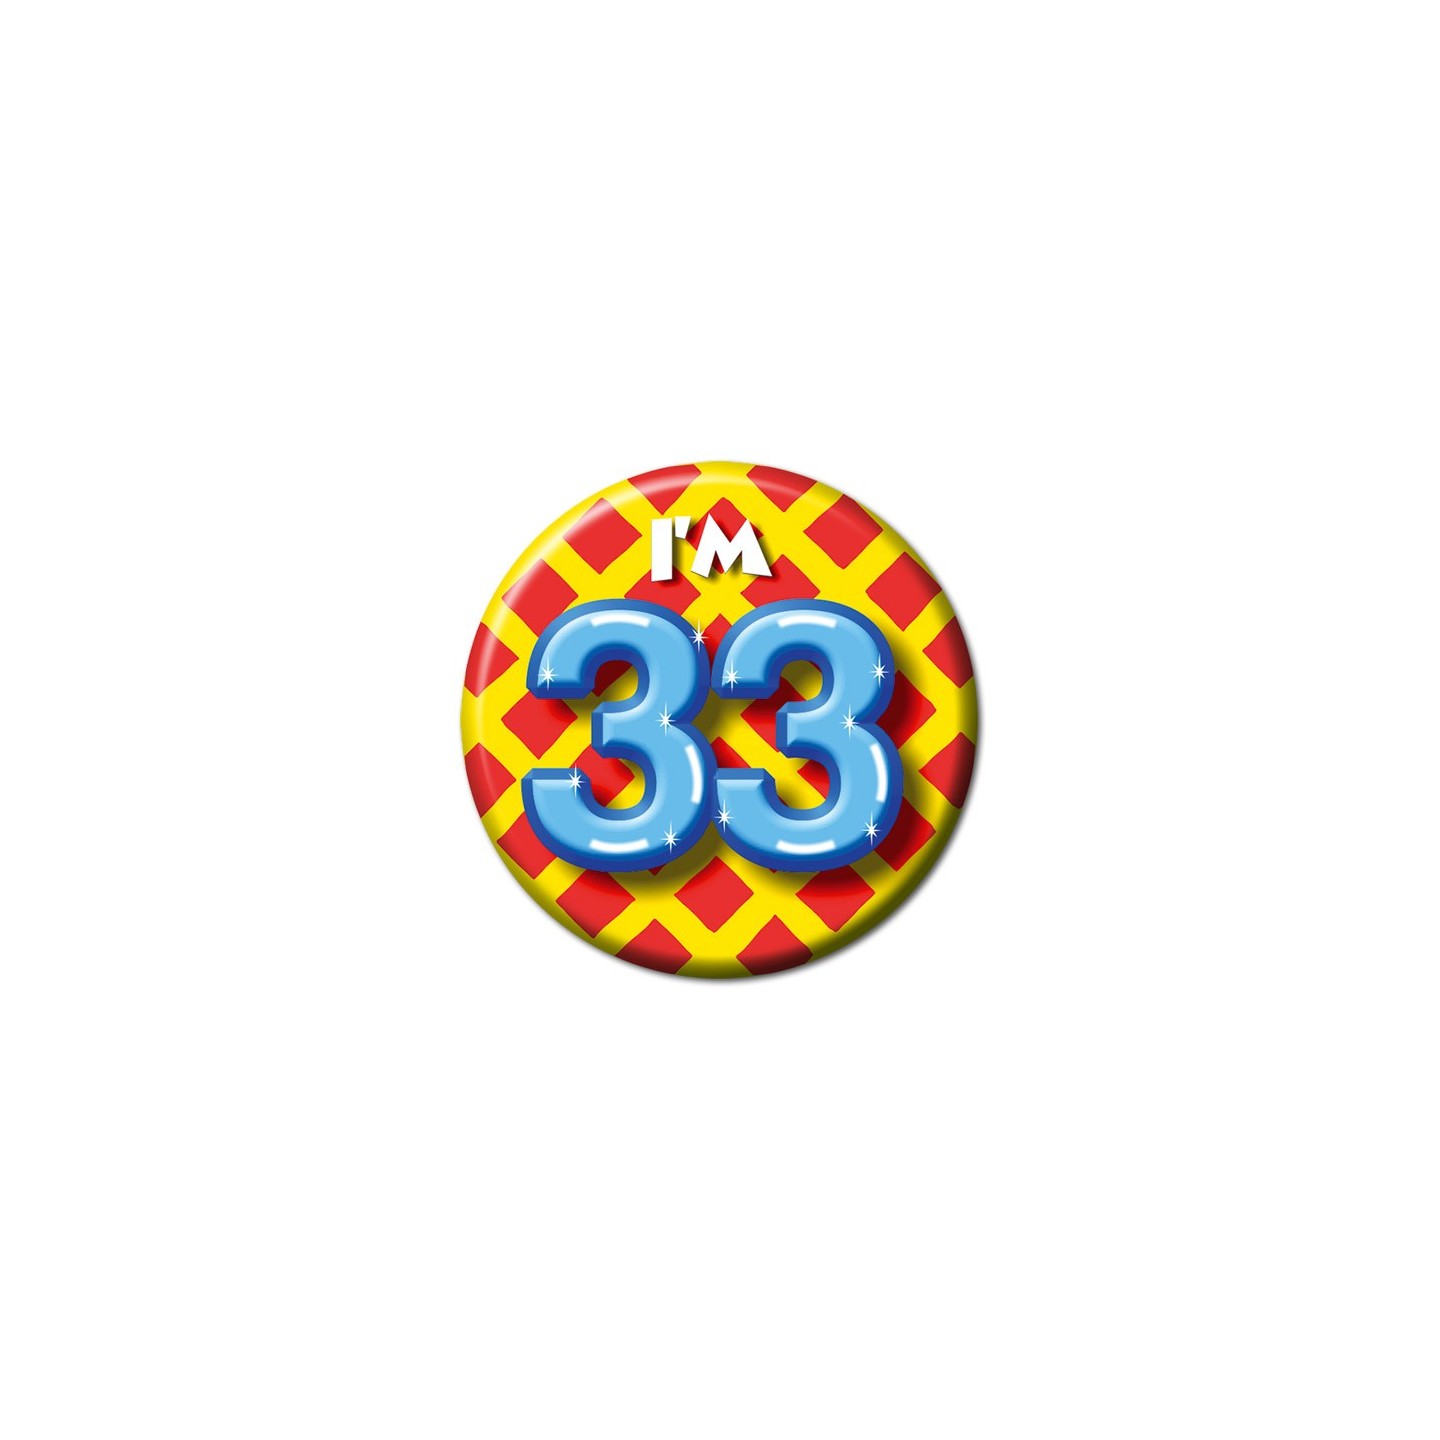 button 33 jaar verjaardag